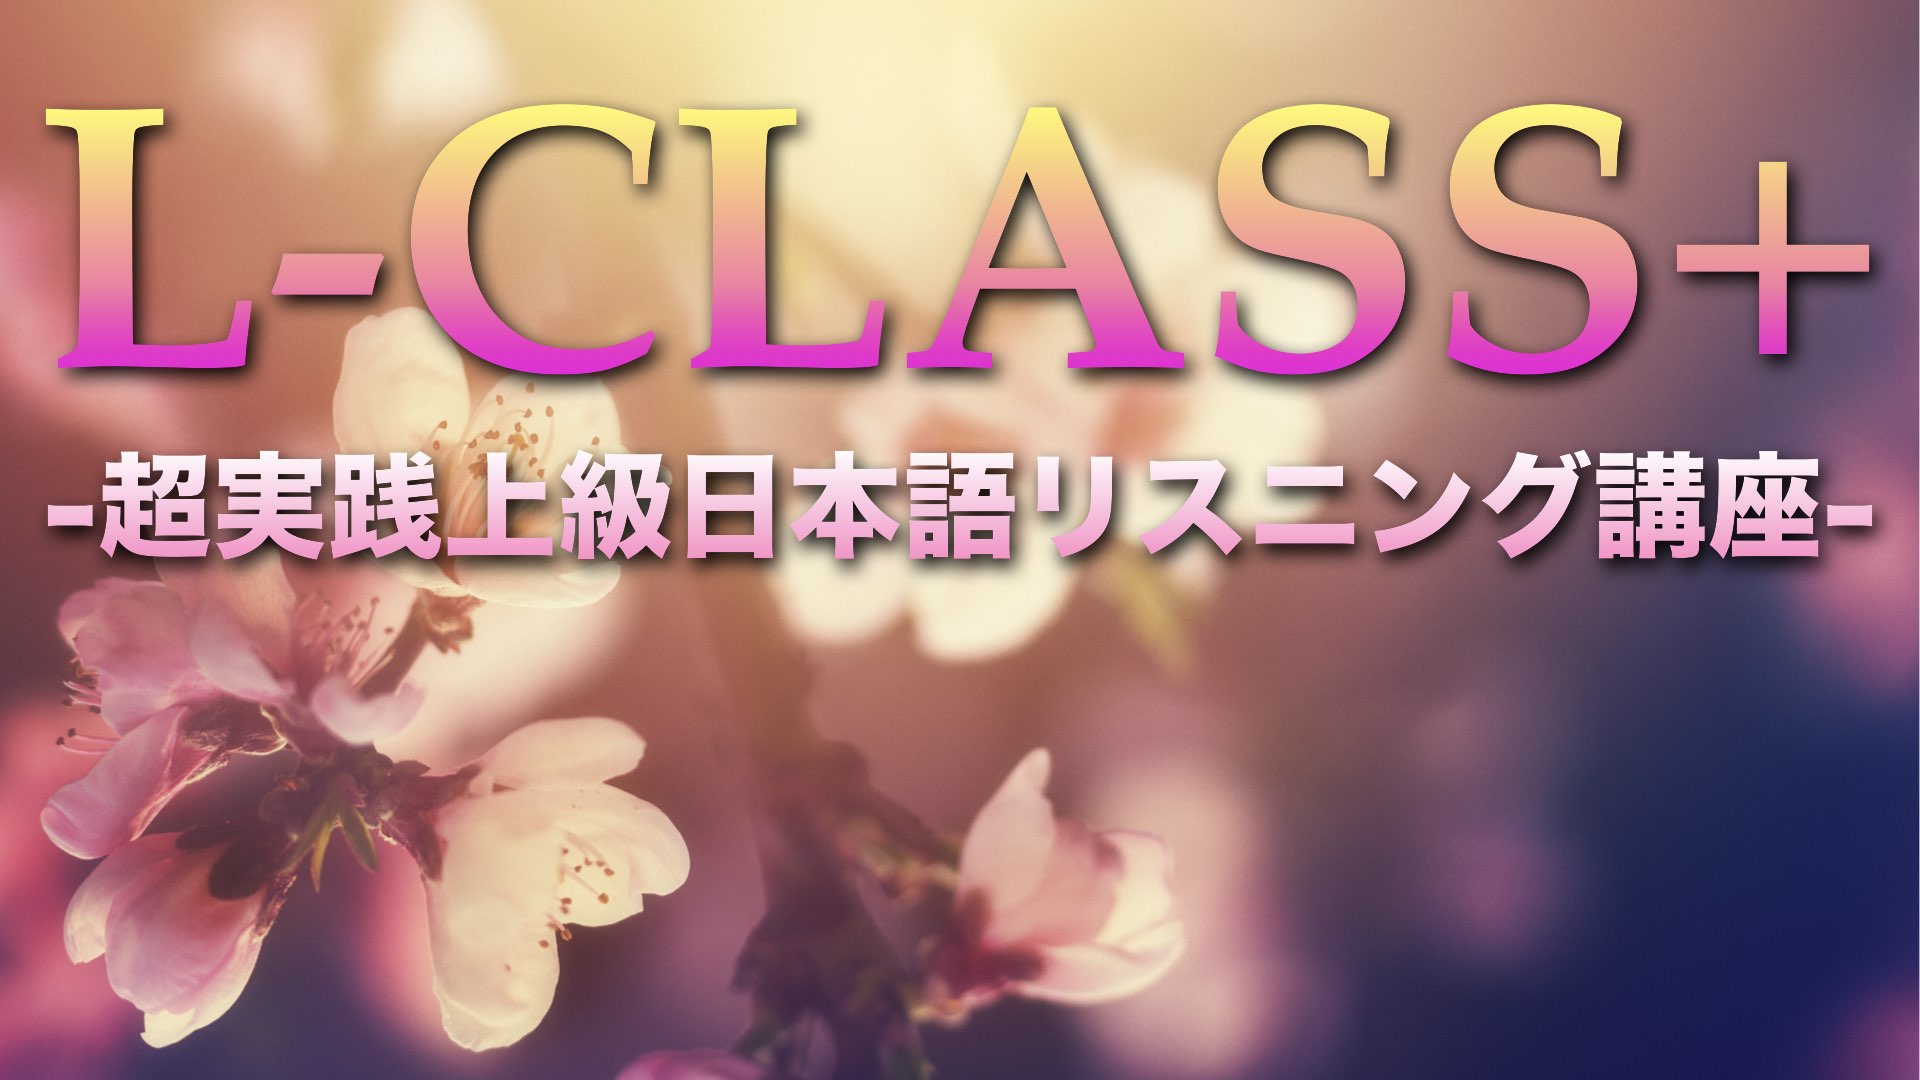 L-CLASS+